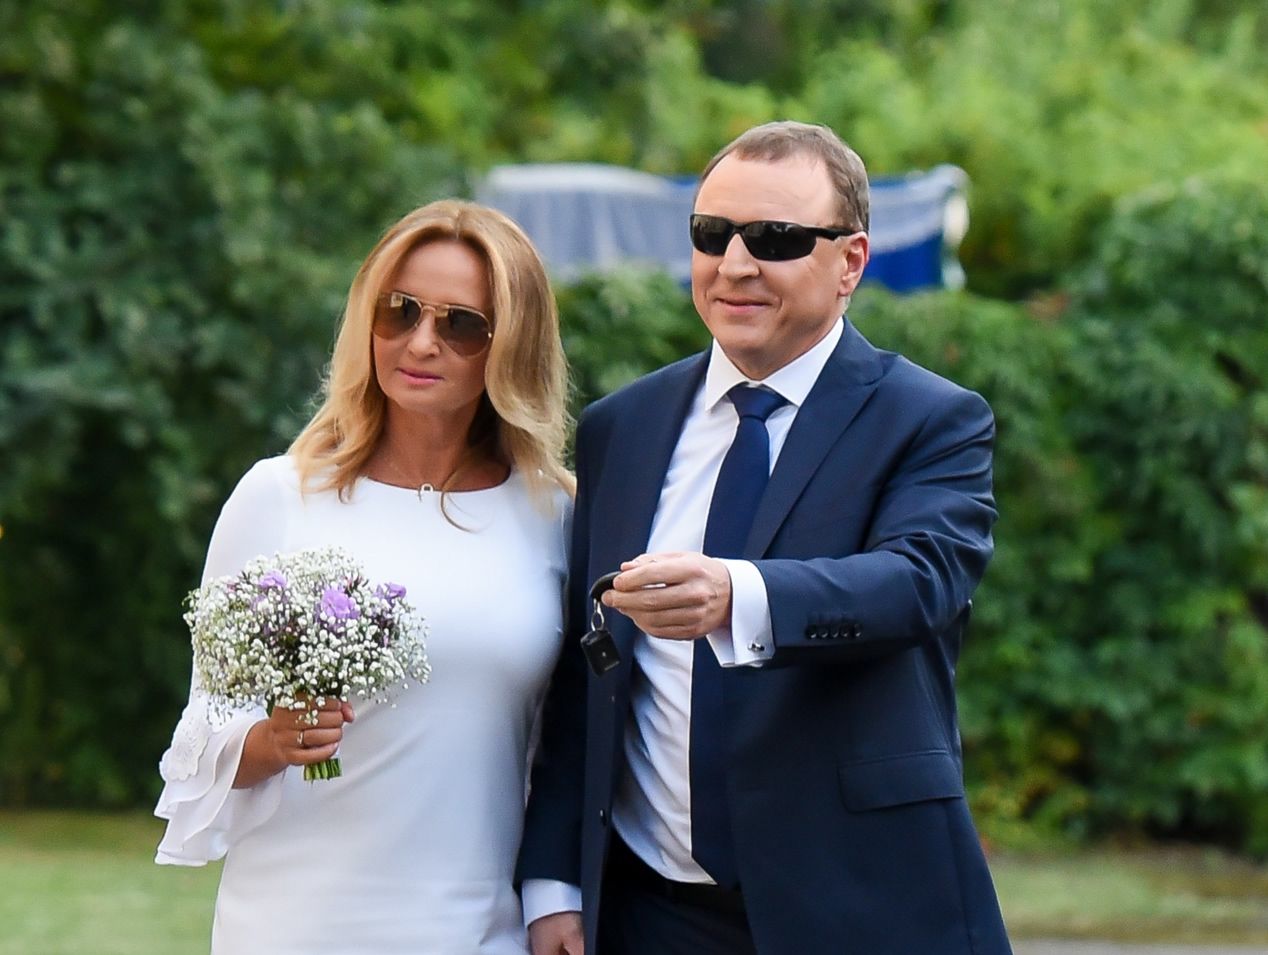 Jacek Kurski ożenił się z Joanną Klimek. Wzięli ślub cywilny